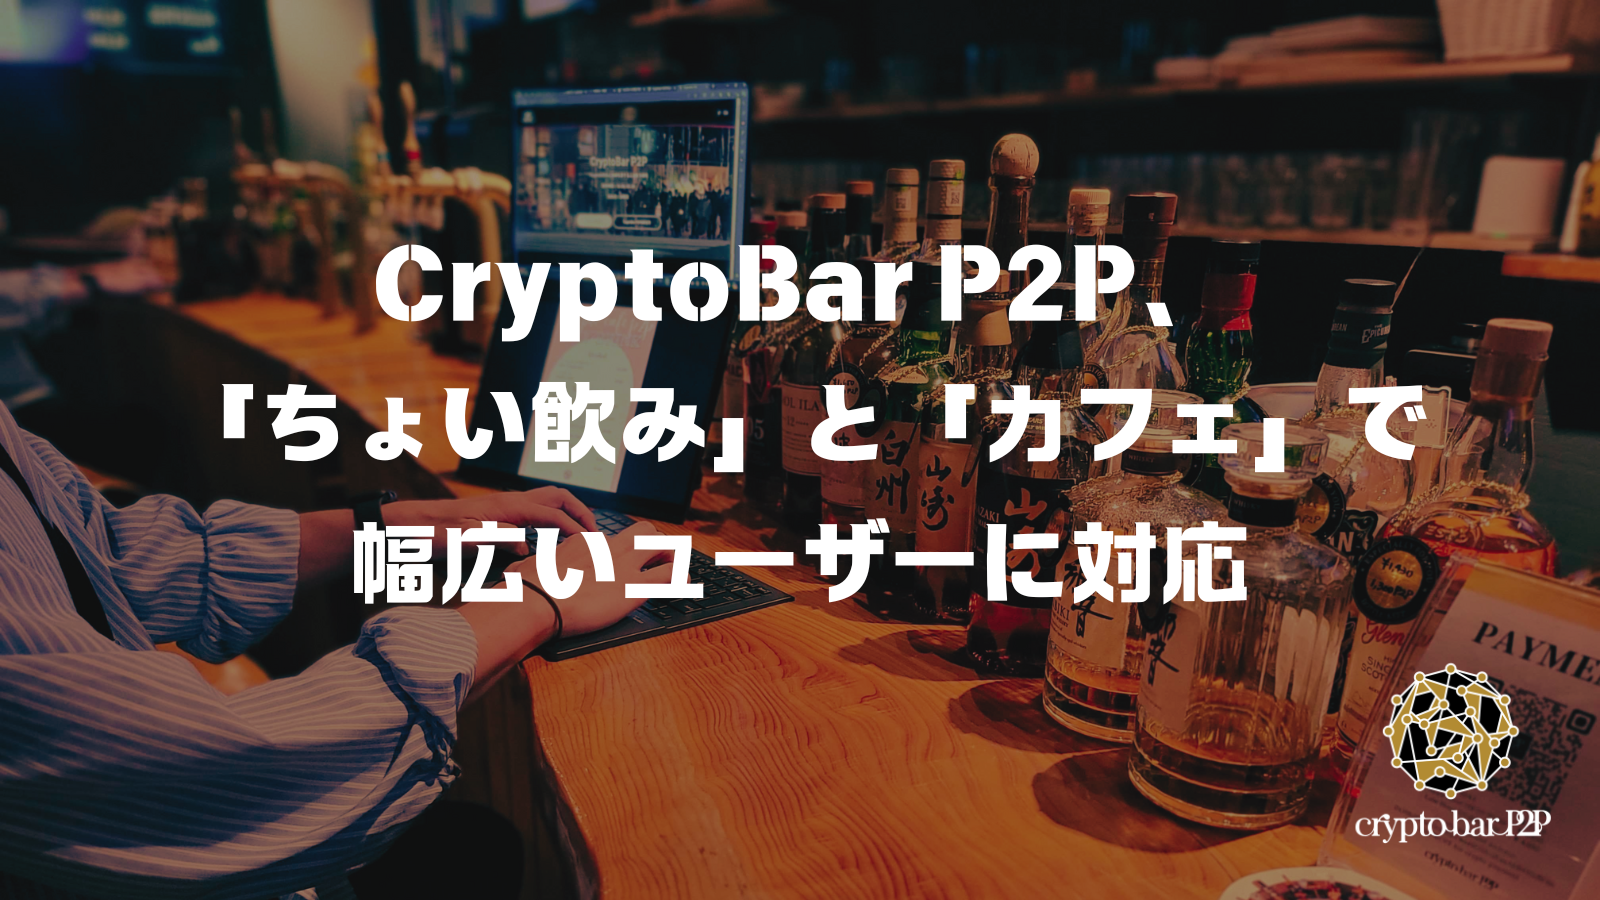 CryptoBar P2P、「ちょい飲み」と「カフェ」で幅広いユーザーに対応